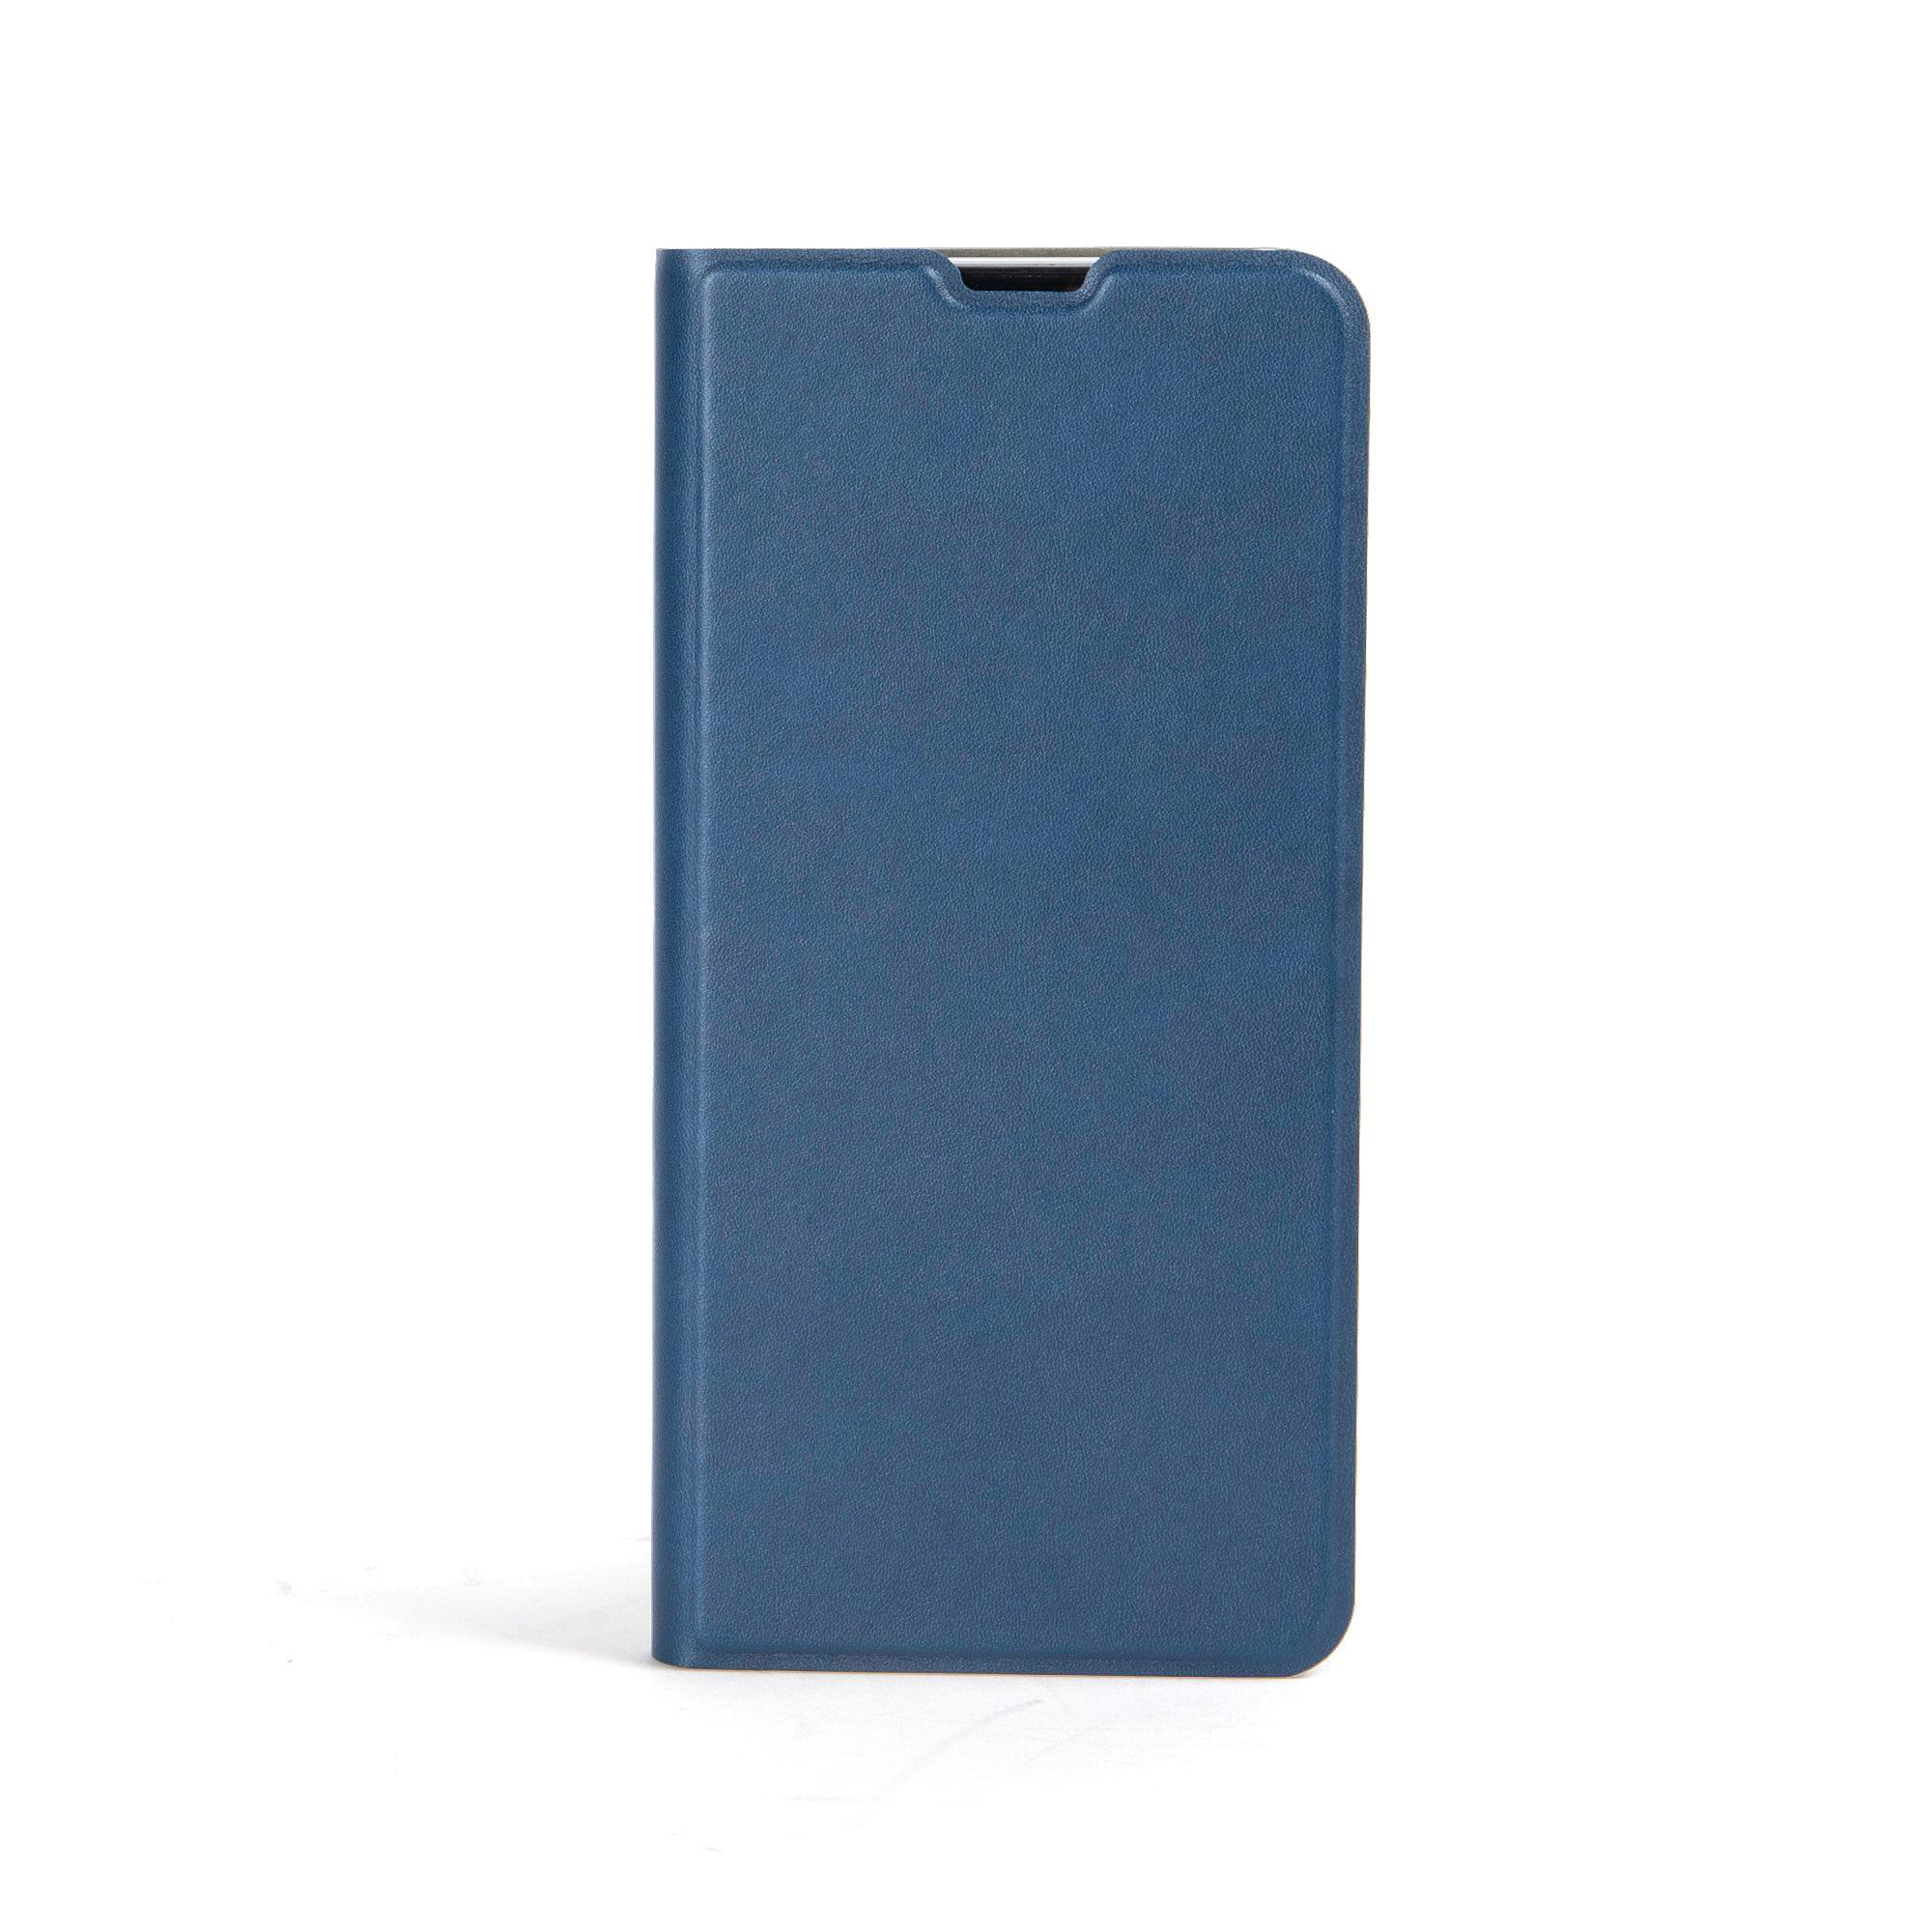 ISY ISC-5201, Blau A32, Bookcover, Samsung, Galaxy